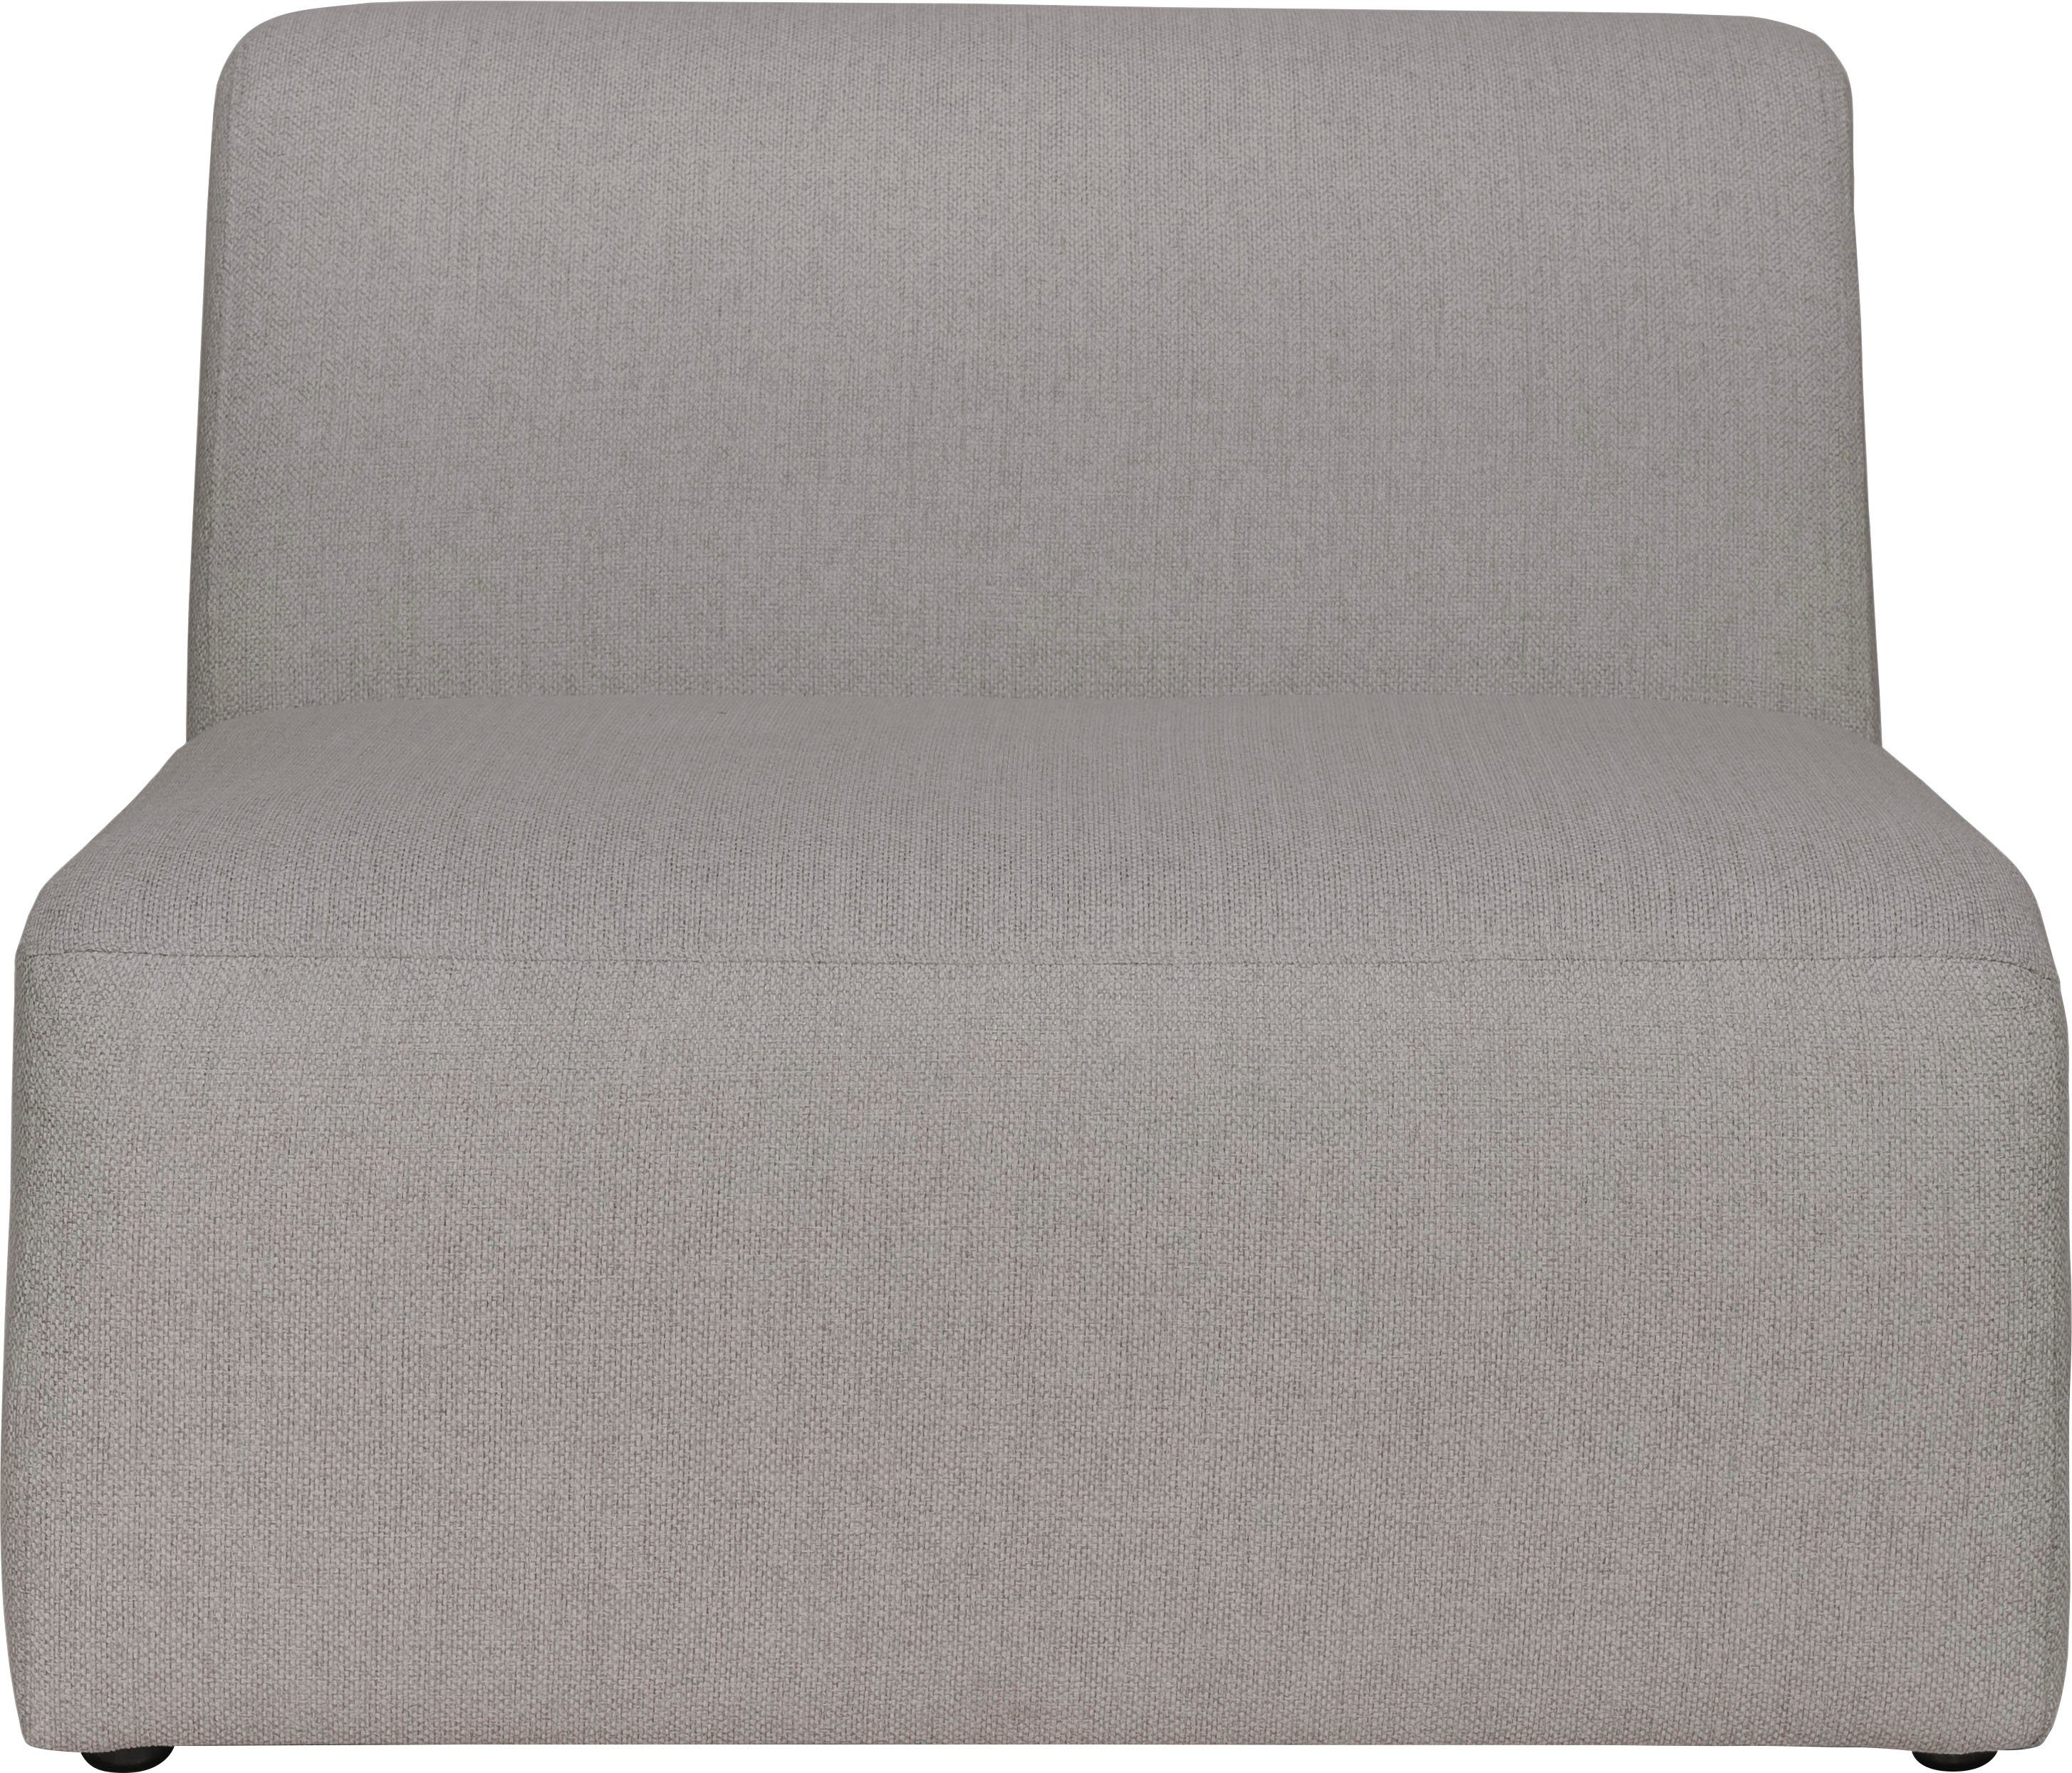 INOSIGN Sofa-Mittelelement Koa, angenehmer Komfort, warm Proportionen grey schöne